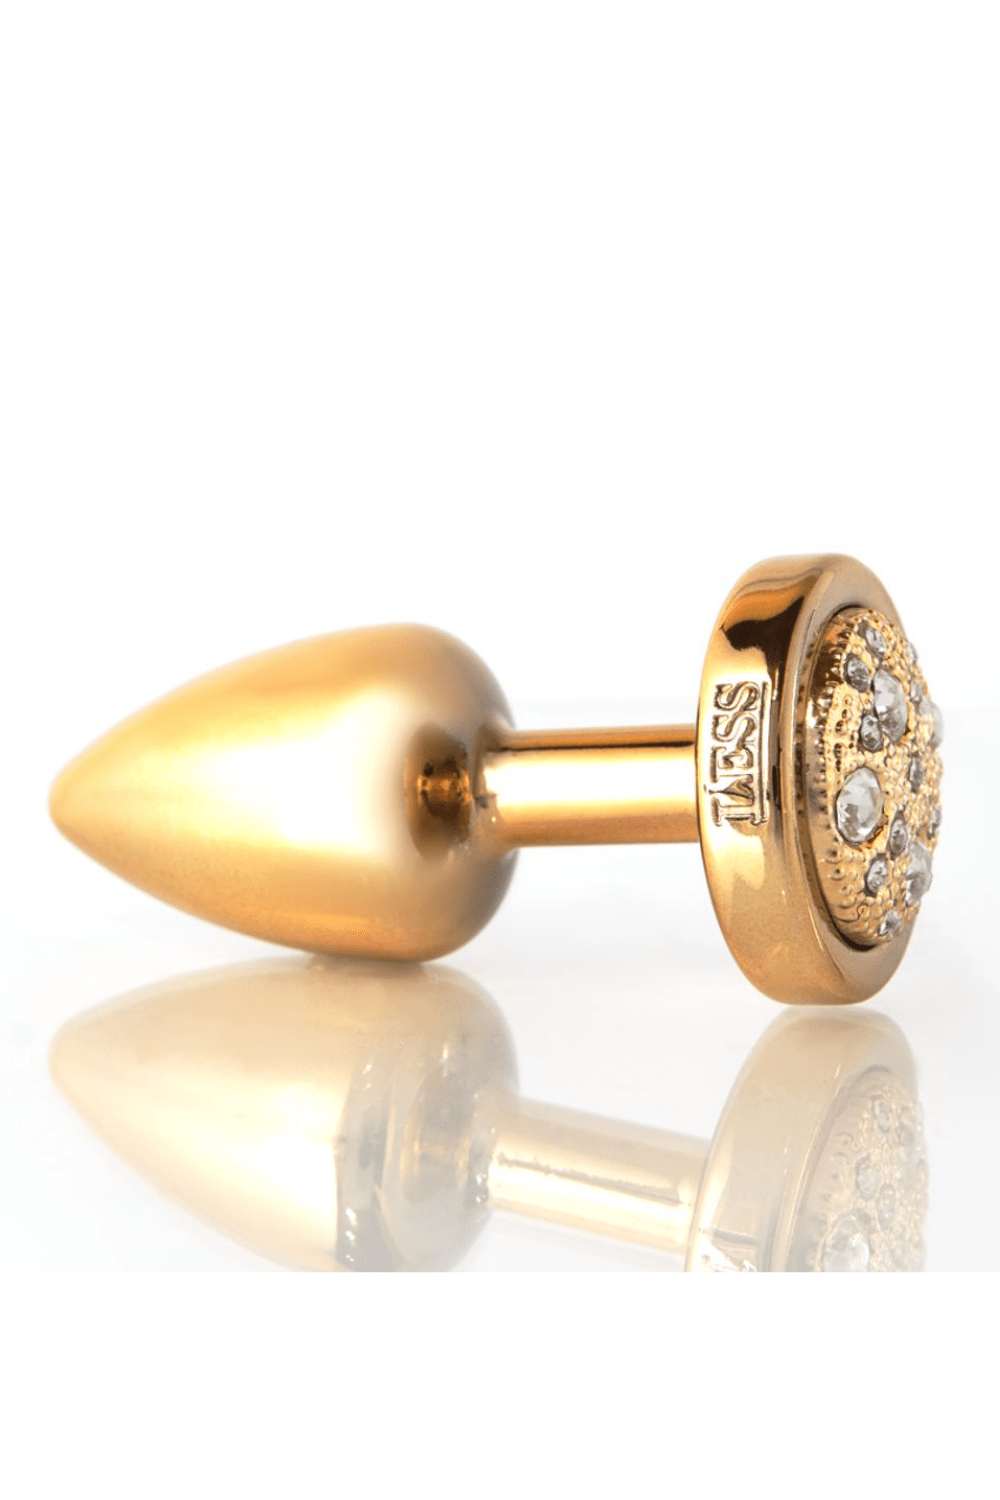 Plug LESS G (ABS) Dourado com Pedra Cravejada Dourada - Tamanho G